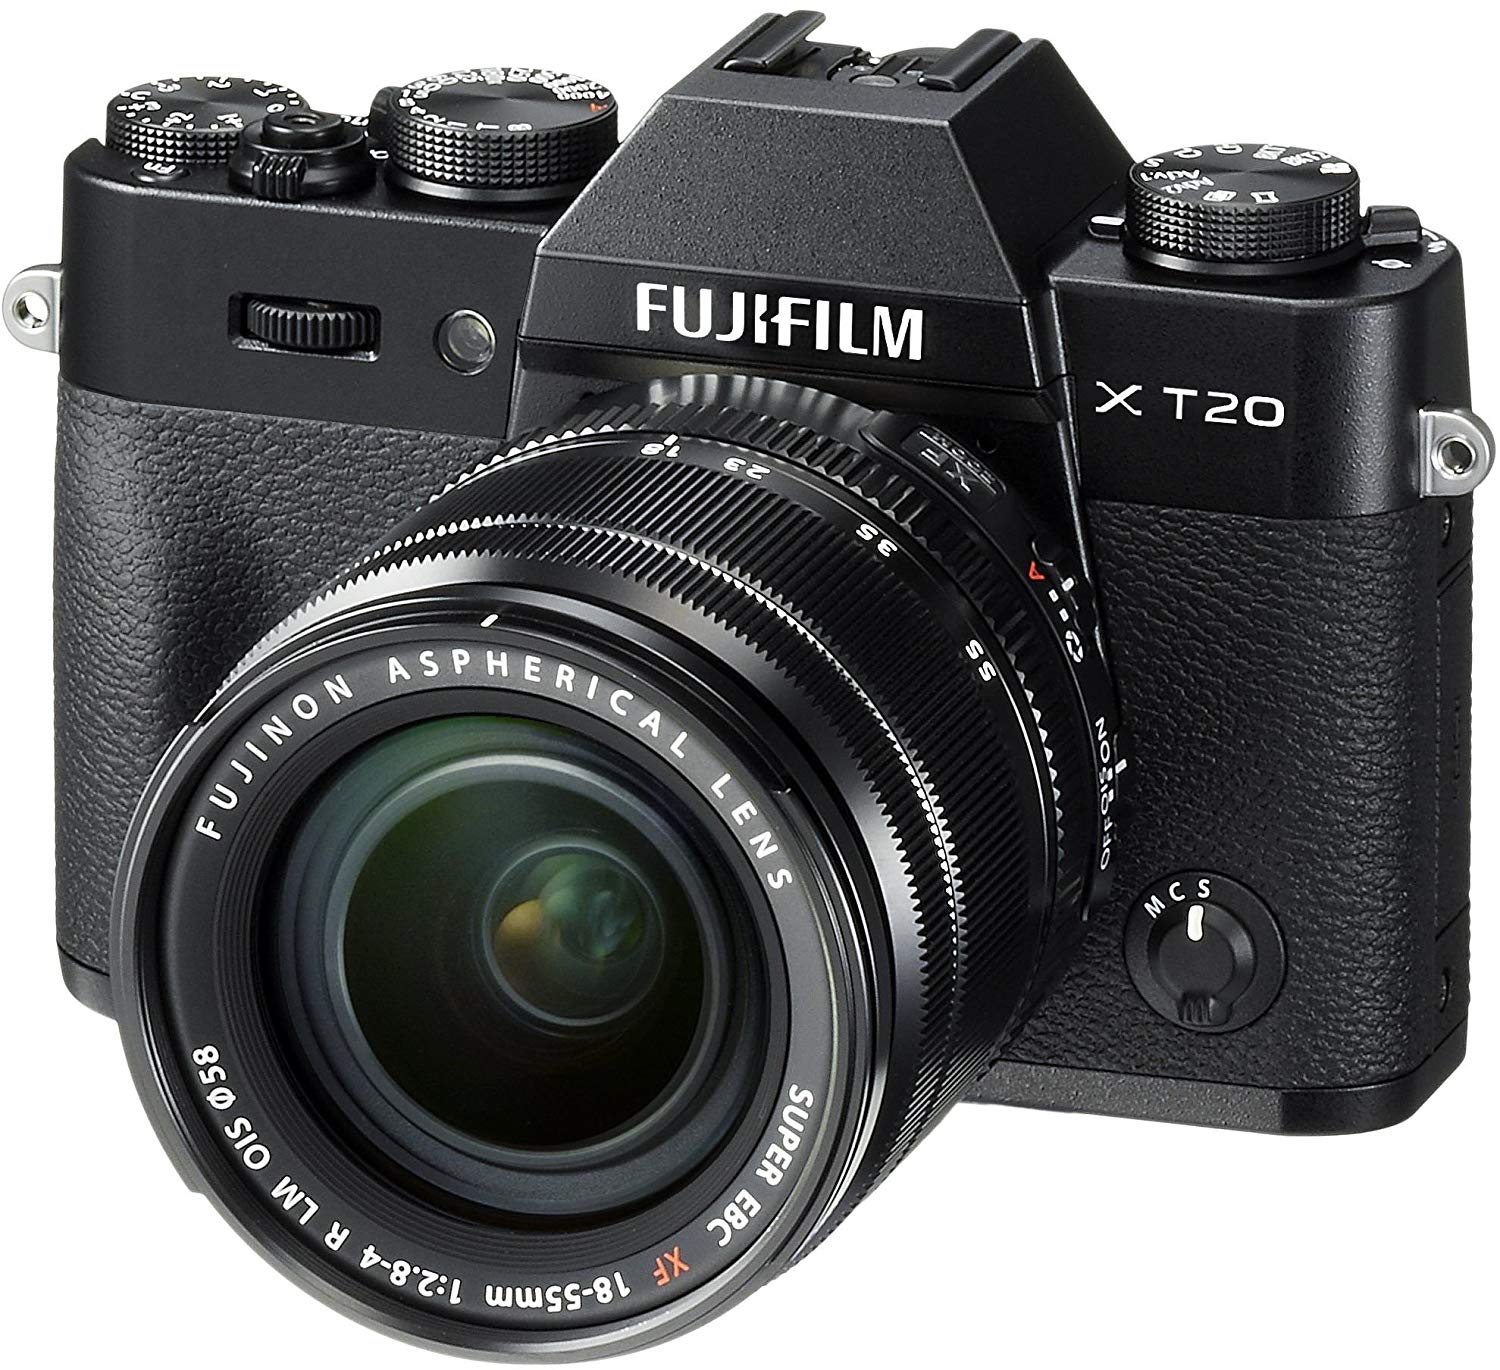 Fujifilm فوجي فيلم X-T20 كاميرا رقمية بدون مرآة مع عدسة XF18-55mmF2.8-4.0 R LM OIS - أسود